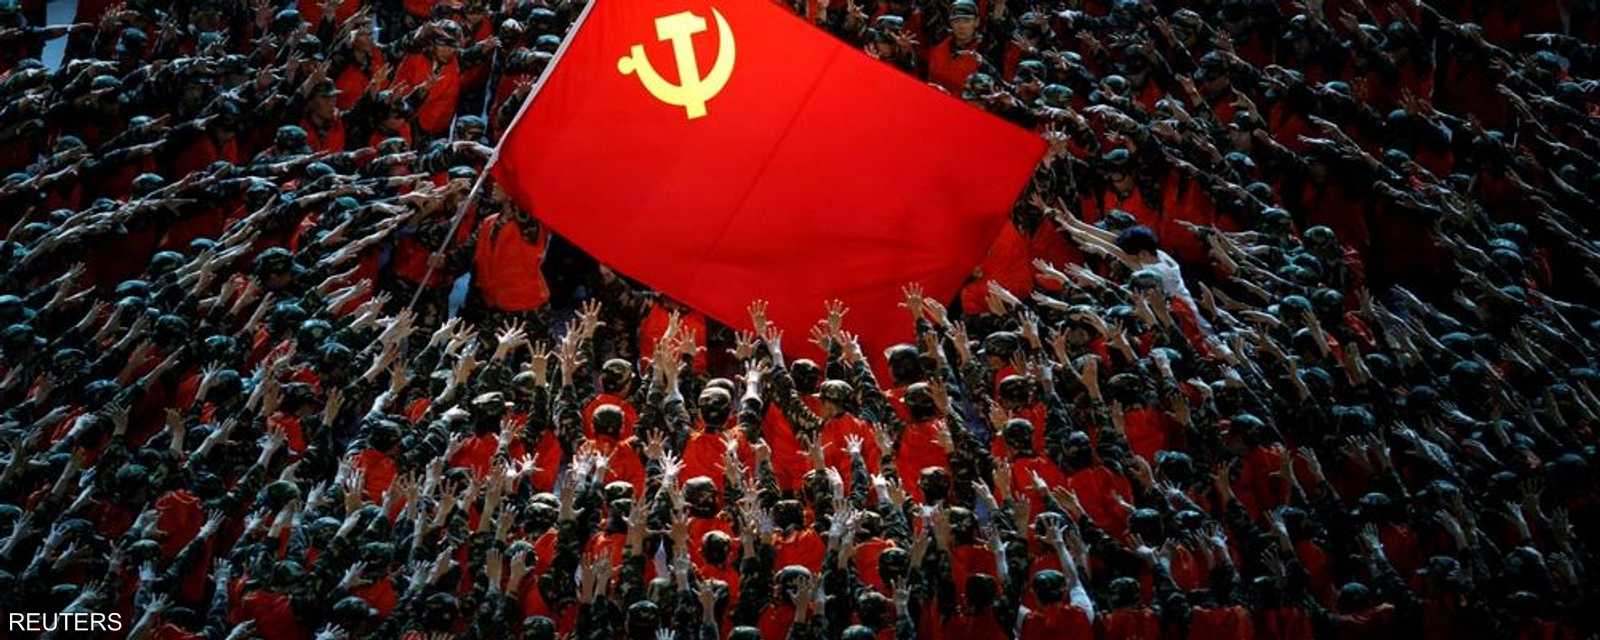 احتفلت الصيت بالذكرى المئوية للحزب الشيوعي الحاكم